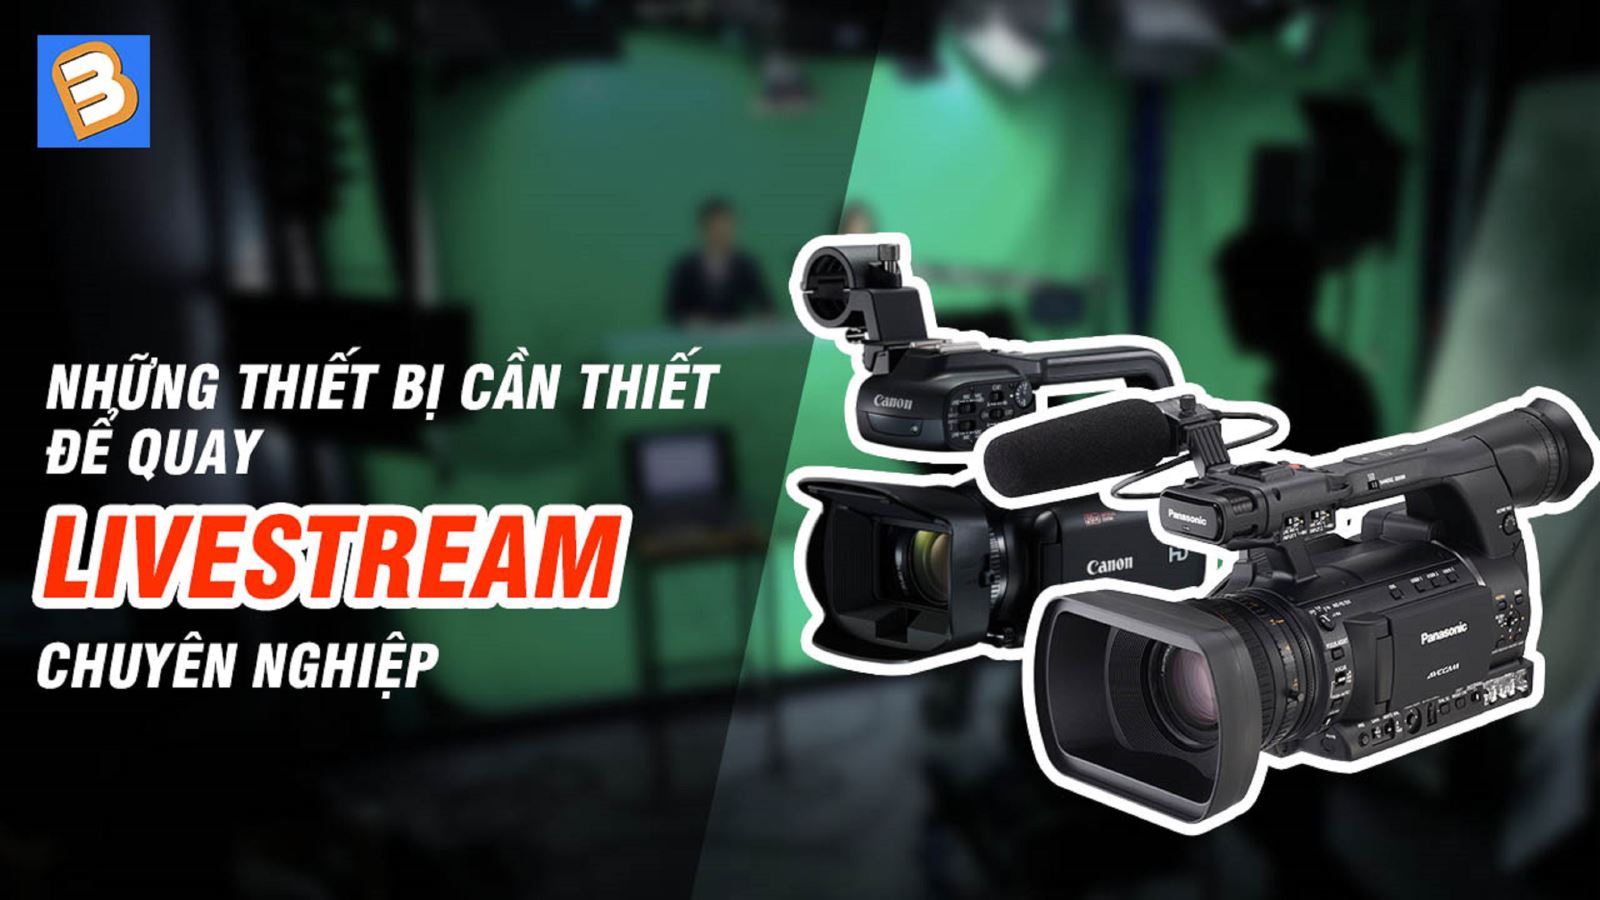 Những thiết bị cần thiết để quay livestream chuyên nghiệp